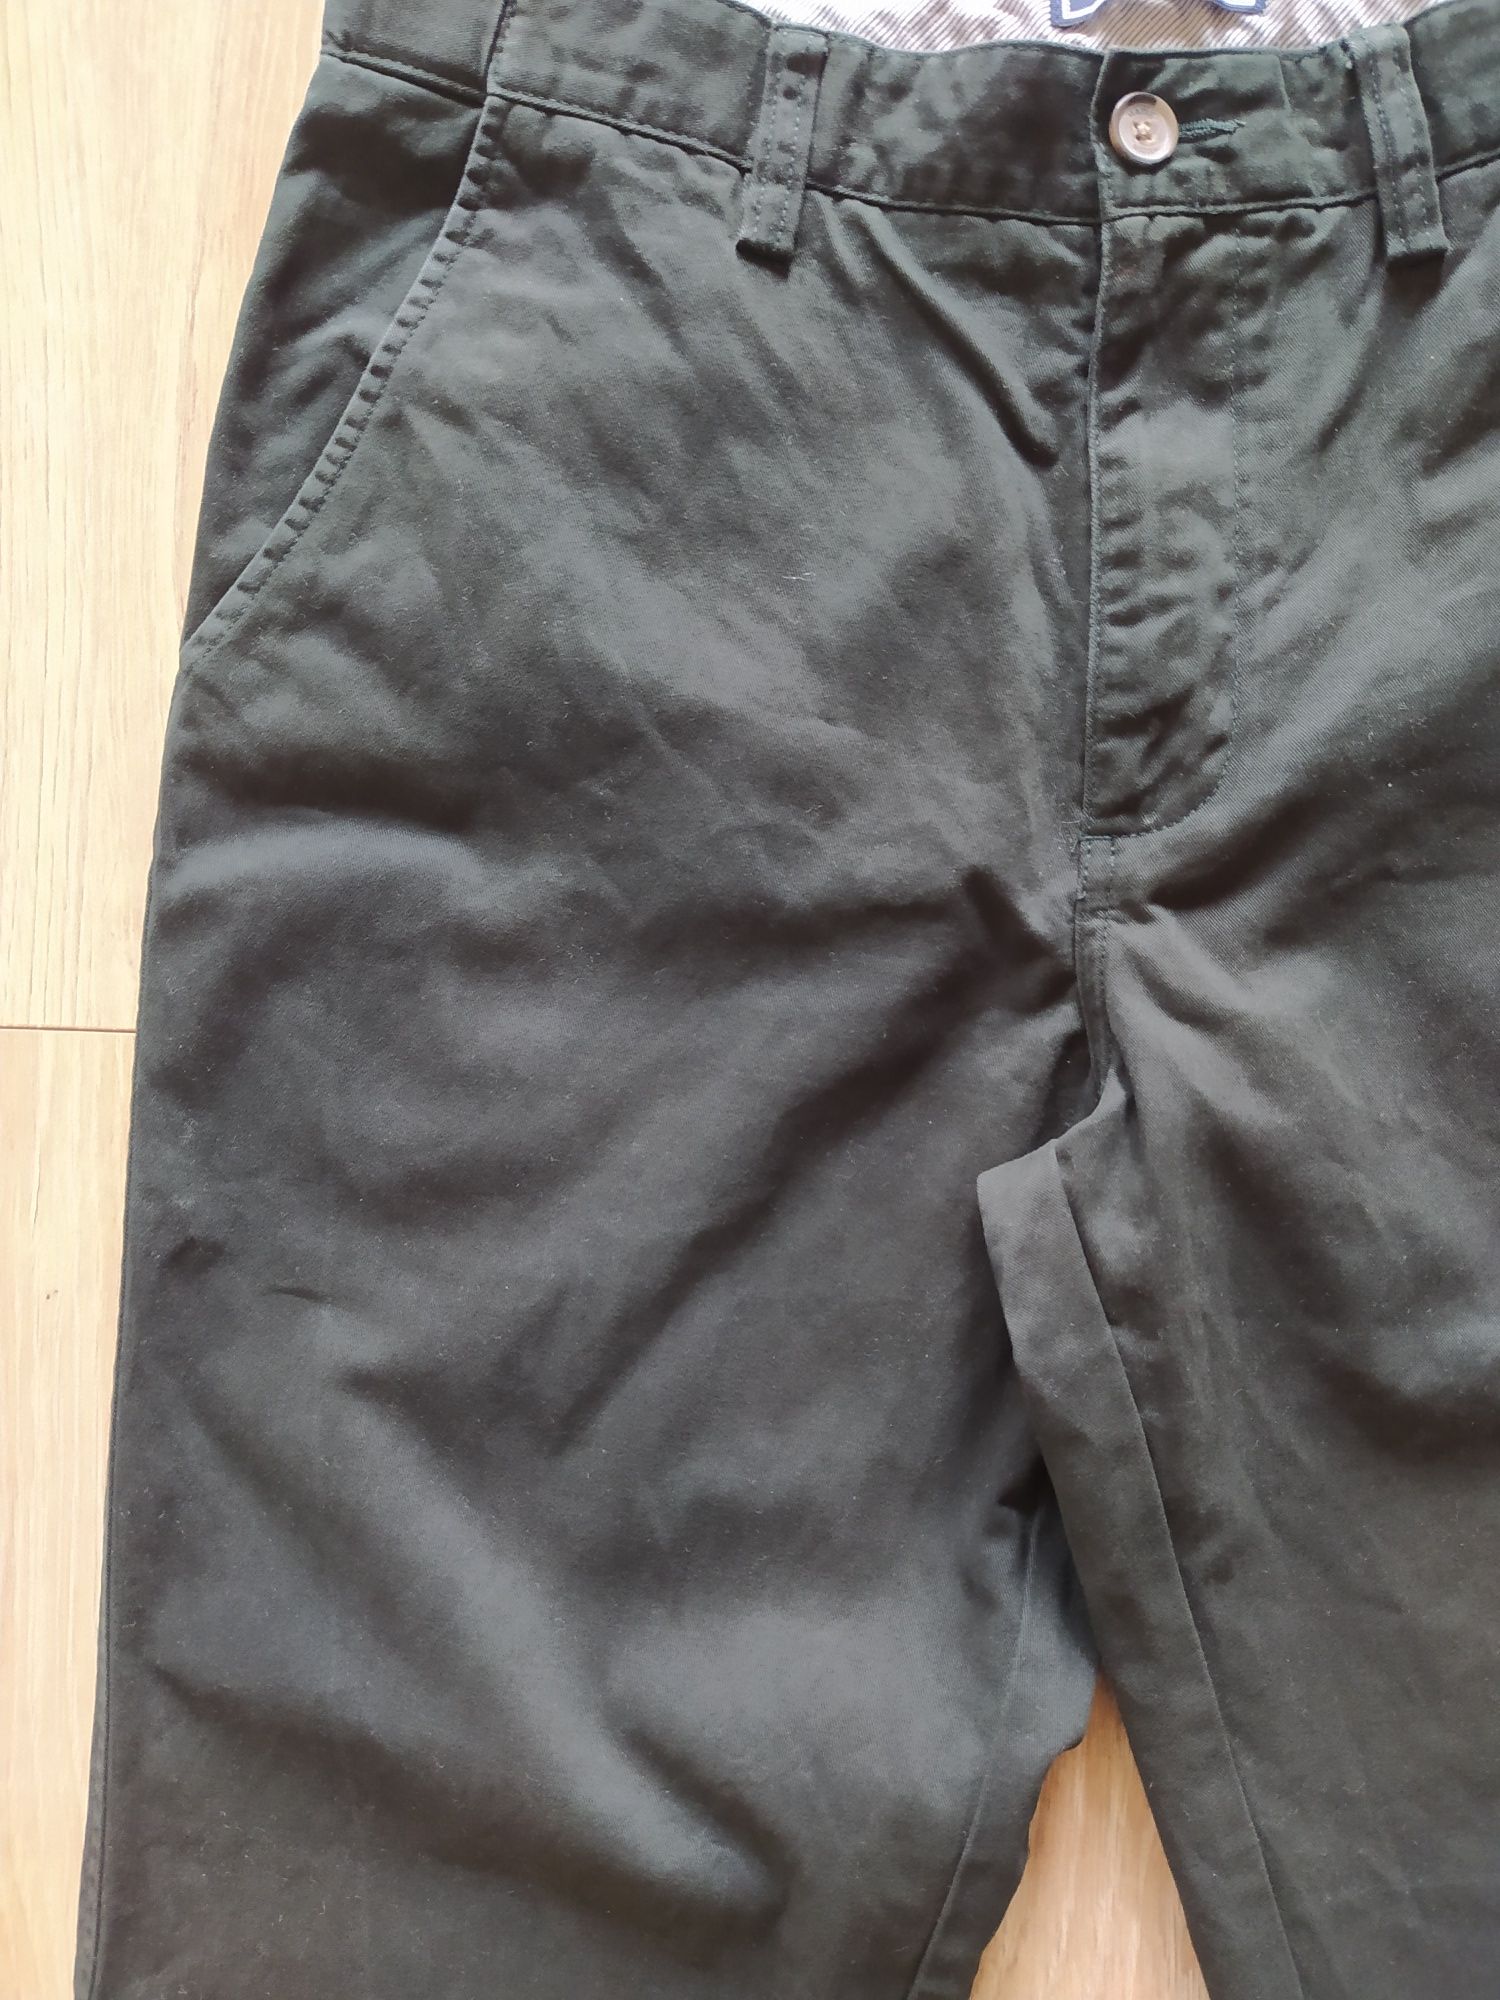 Maine - spodnie męskie, rozmiar 34 (L)